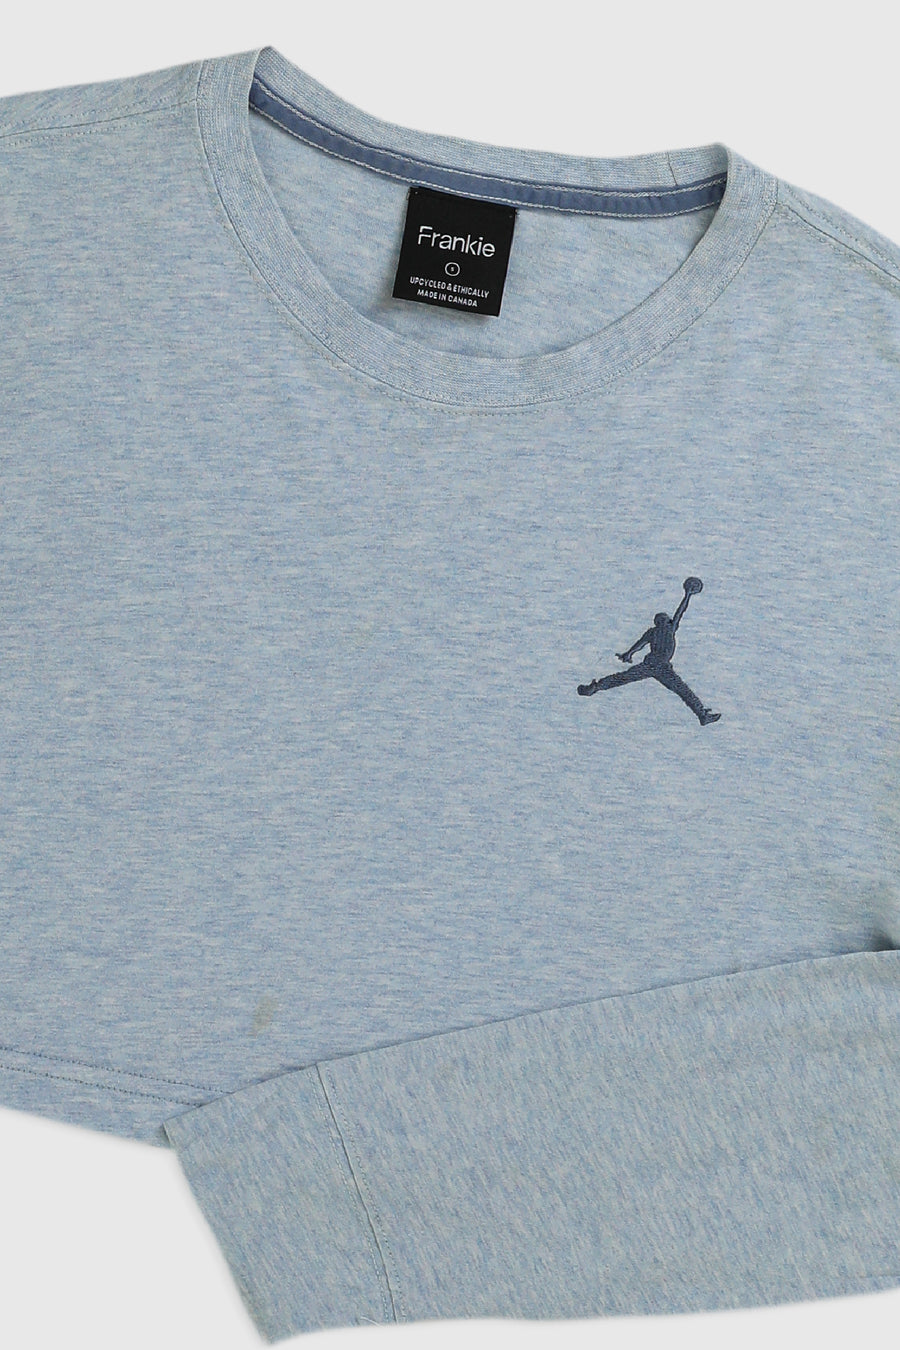 Rework Nike Air Jordan Crop Long Sleeve Tee - S